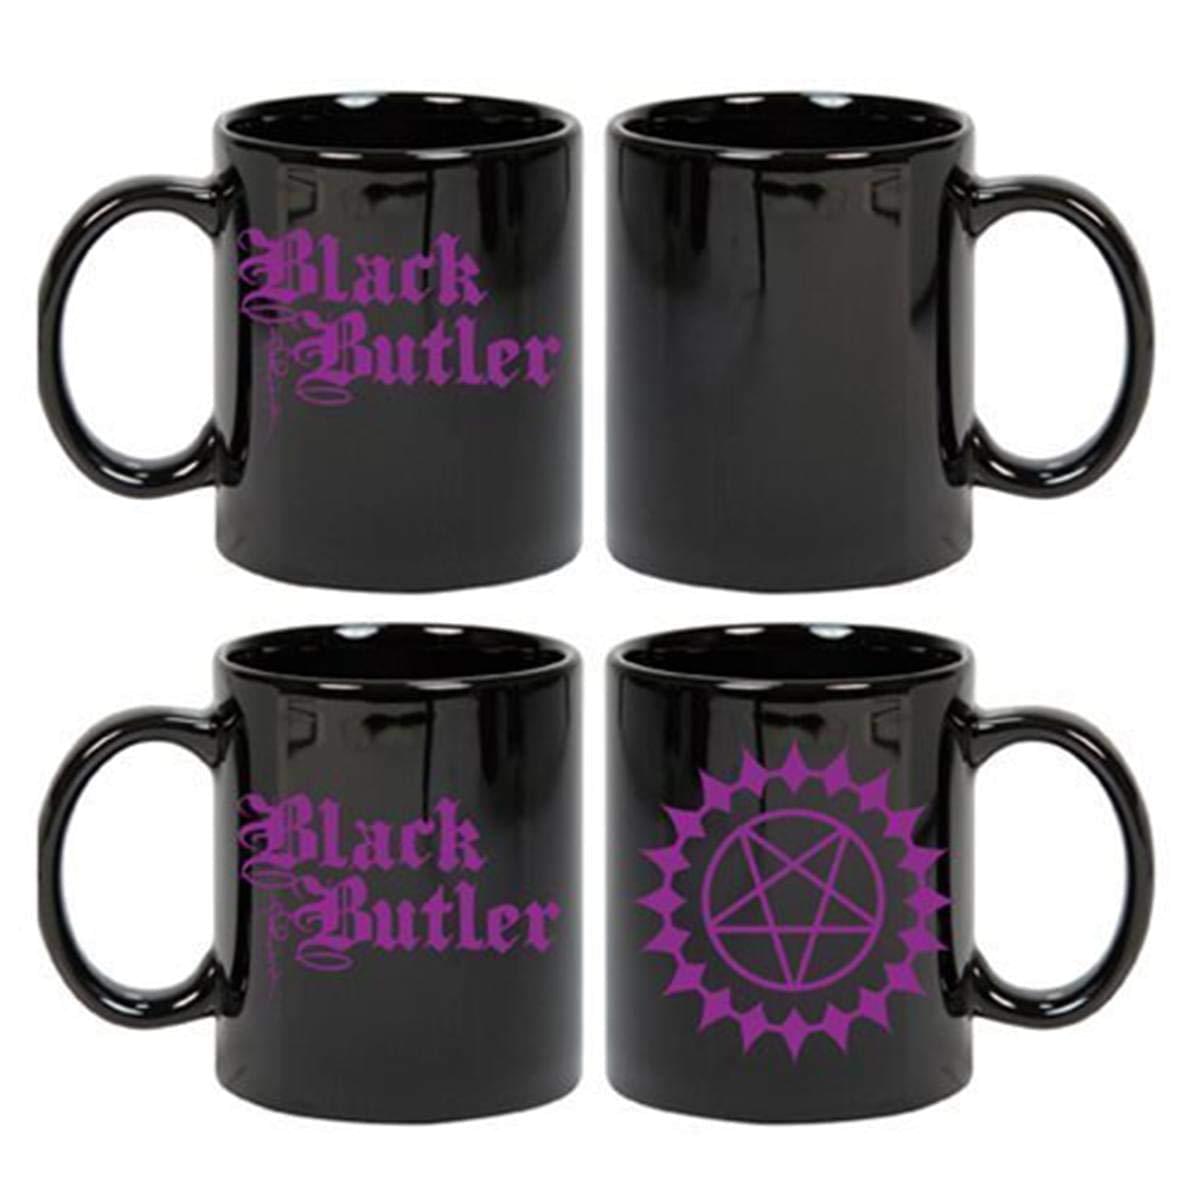 Black Butler Color Change 11oz Ceramic Mug